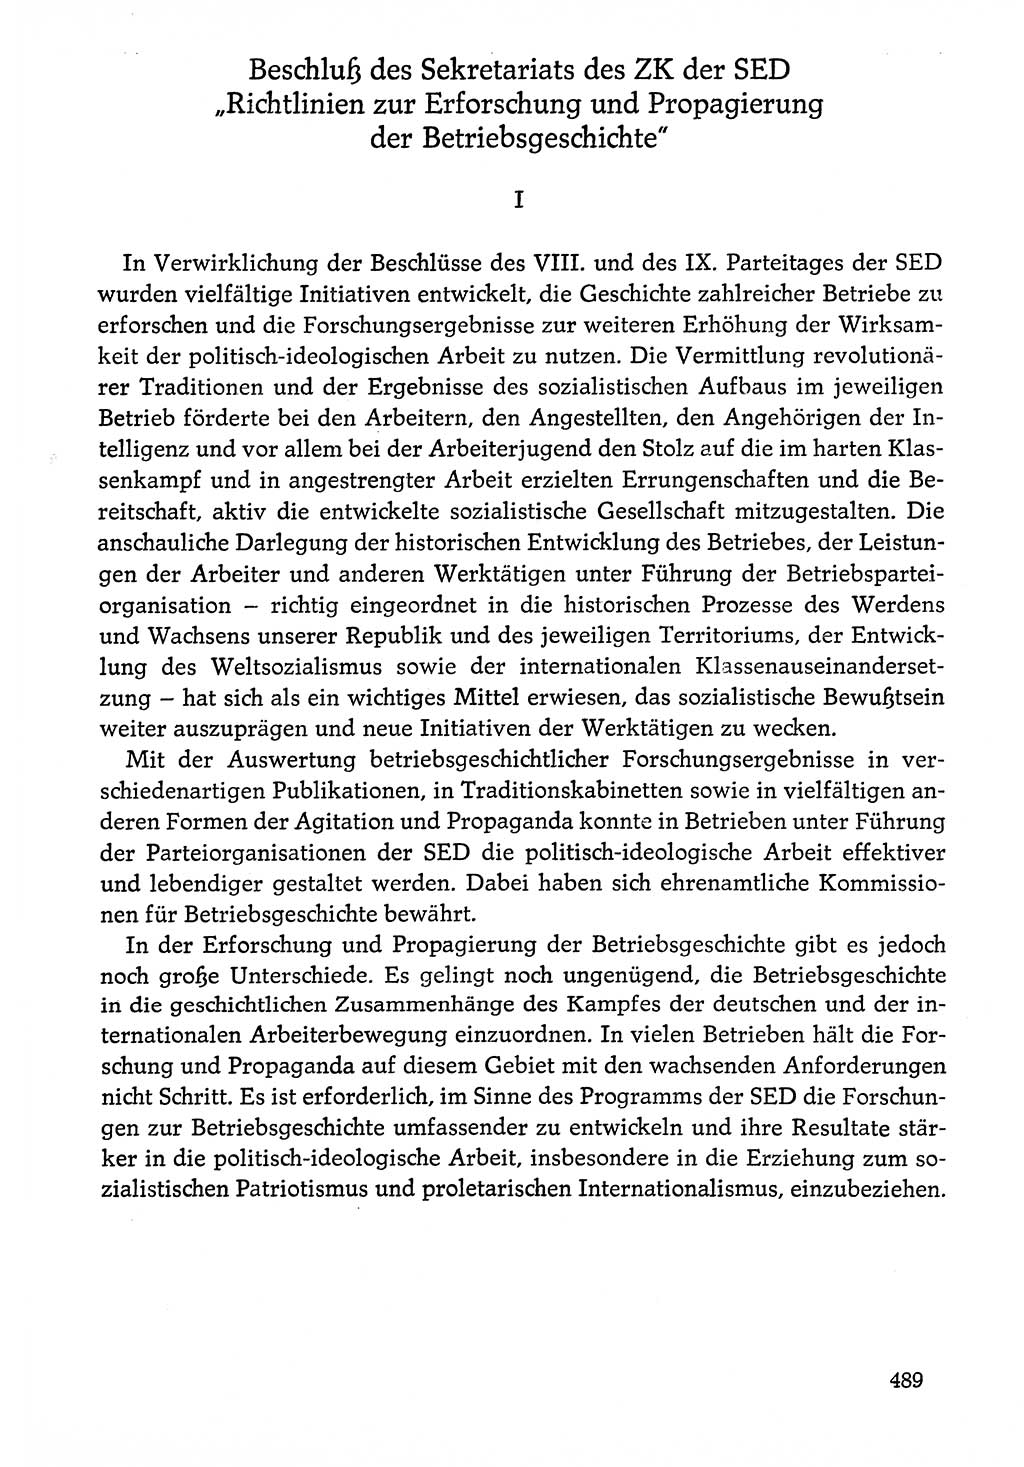 Dokumente der Sozialistischen Einheitspartei Deutschlands (SED) [Deutsche Demokratische Republik (DDR)] 1976-1977, Seite 489 (Dok. SED DDR 1976-1977, S. 489)